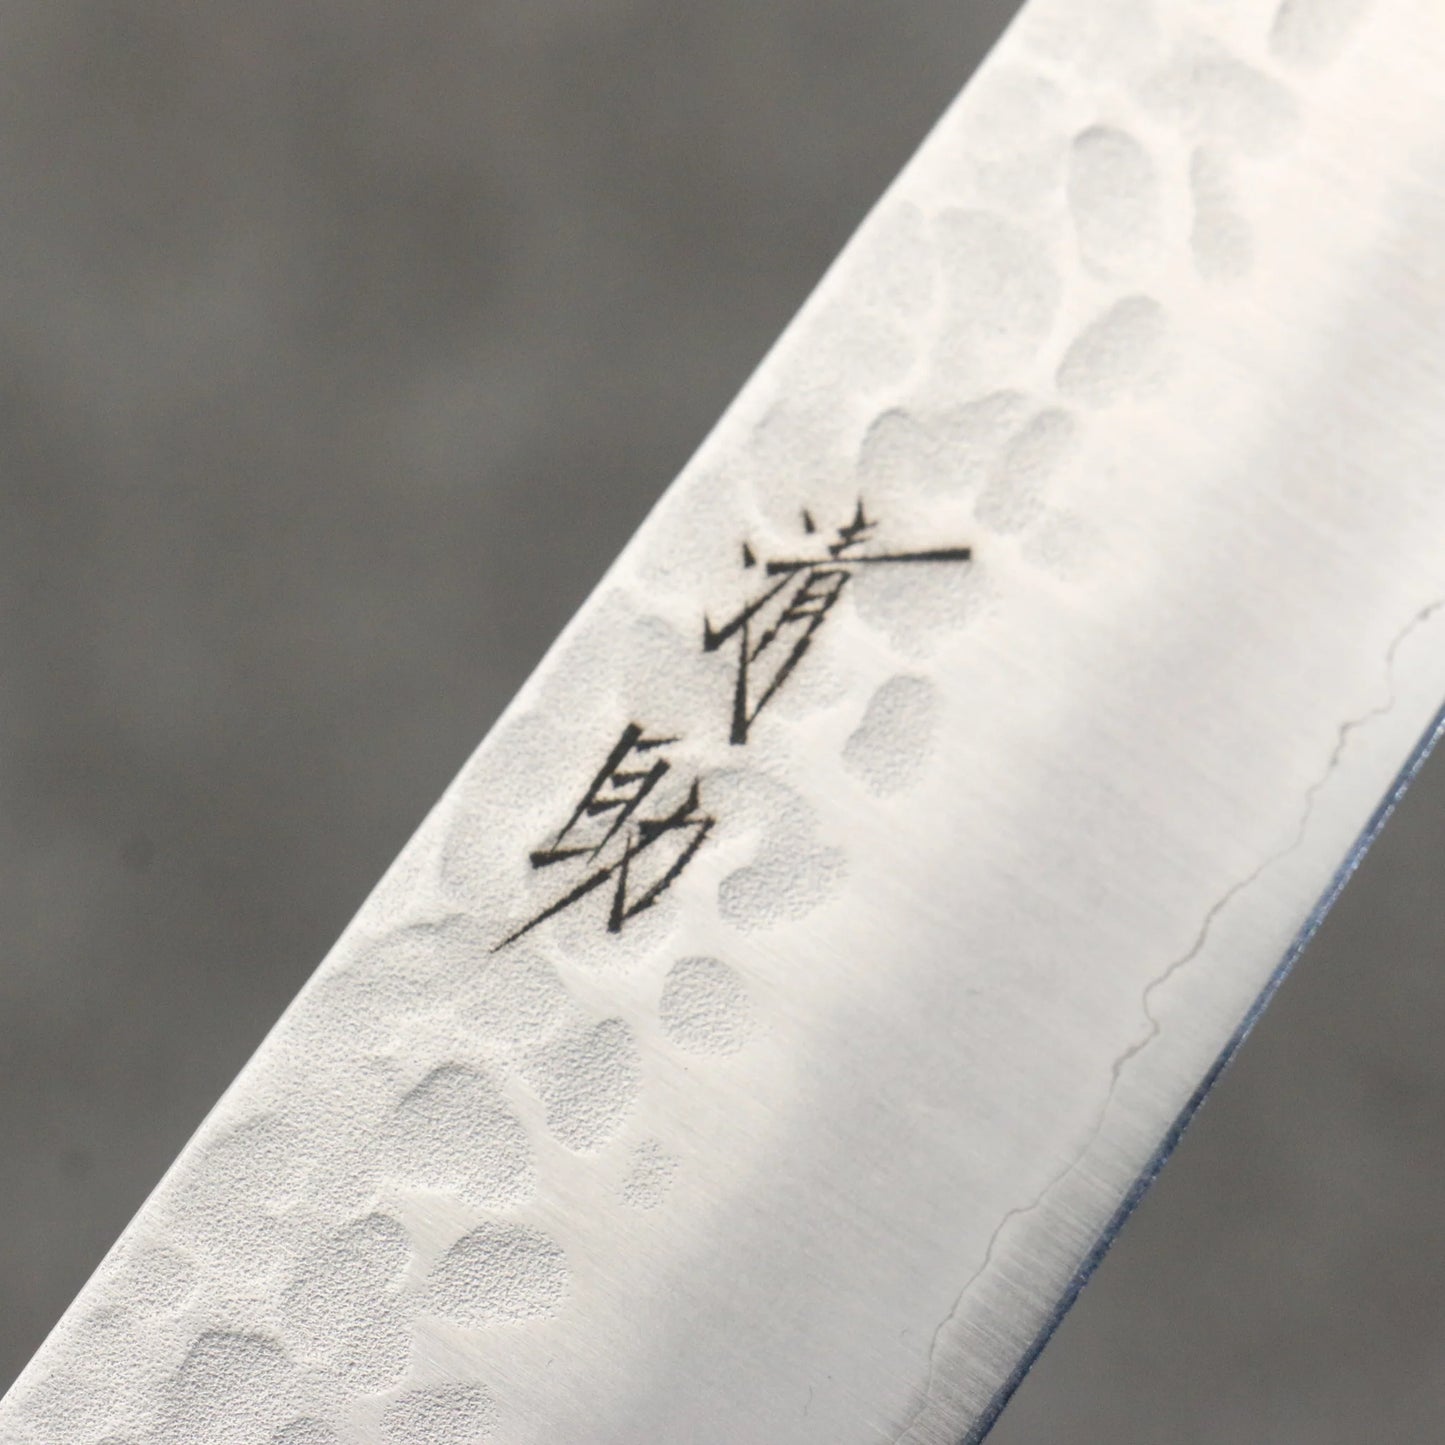 Thương hiệu Seisuke thép AUS8 vân búa dao rèn thủ công Dao lọc gân chuyên dụng Sujihiki 240mm chuôi dao gỗ Pakka đen